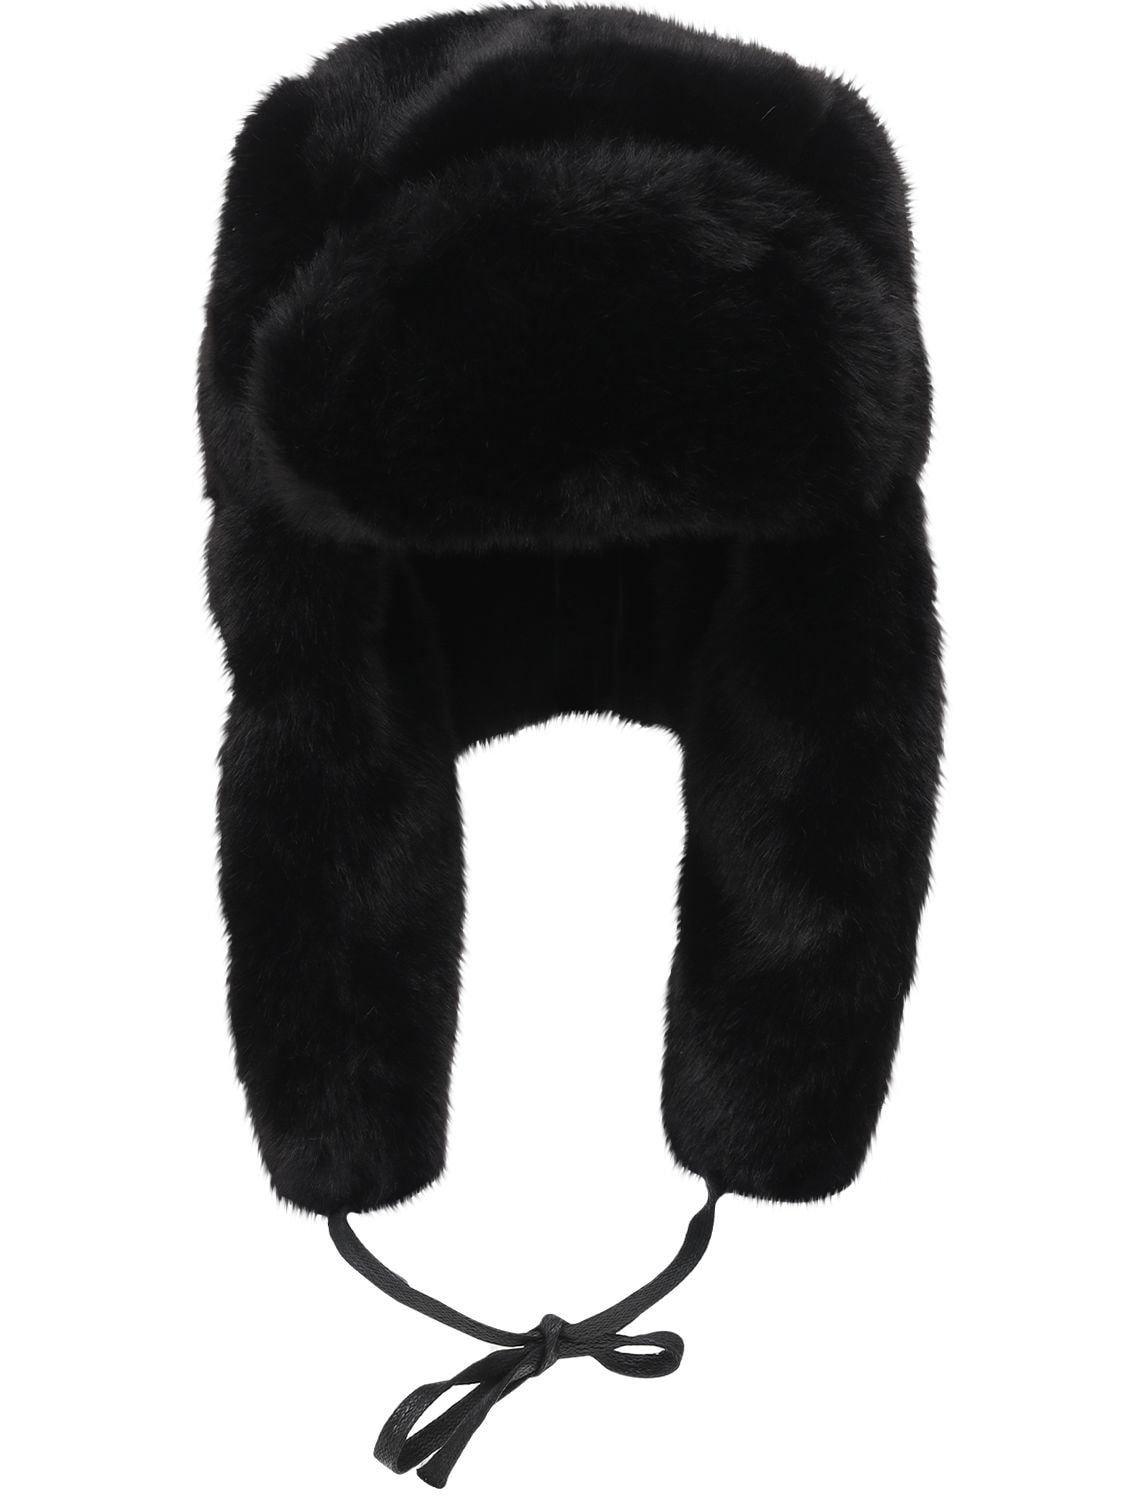 Kangol - Black faux fur trapper hat - Multicolor | Luisaviaroma